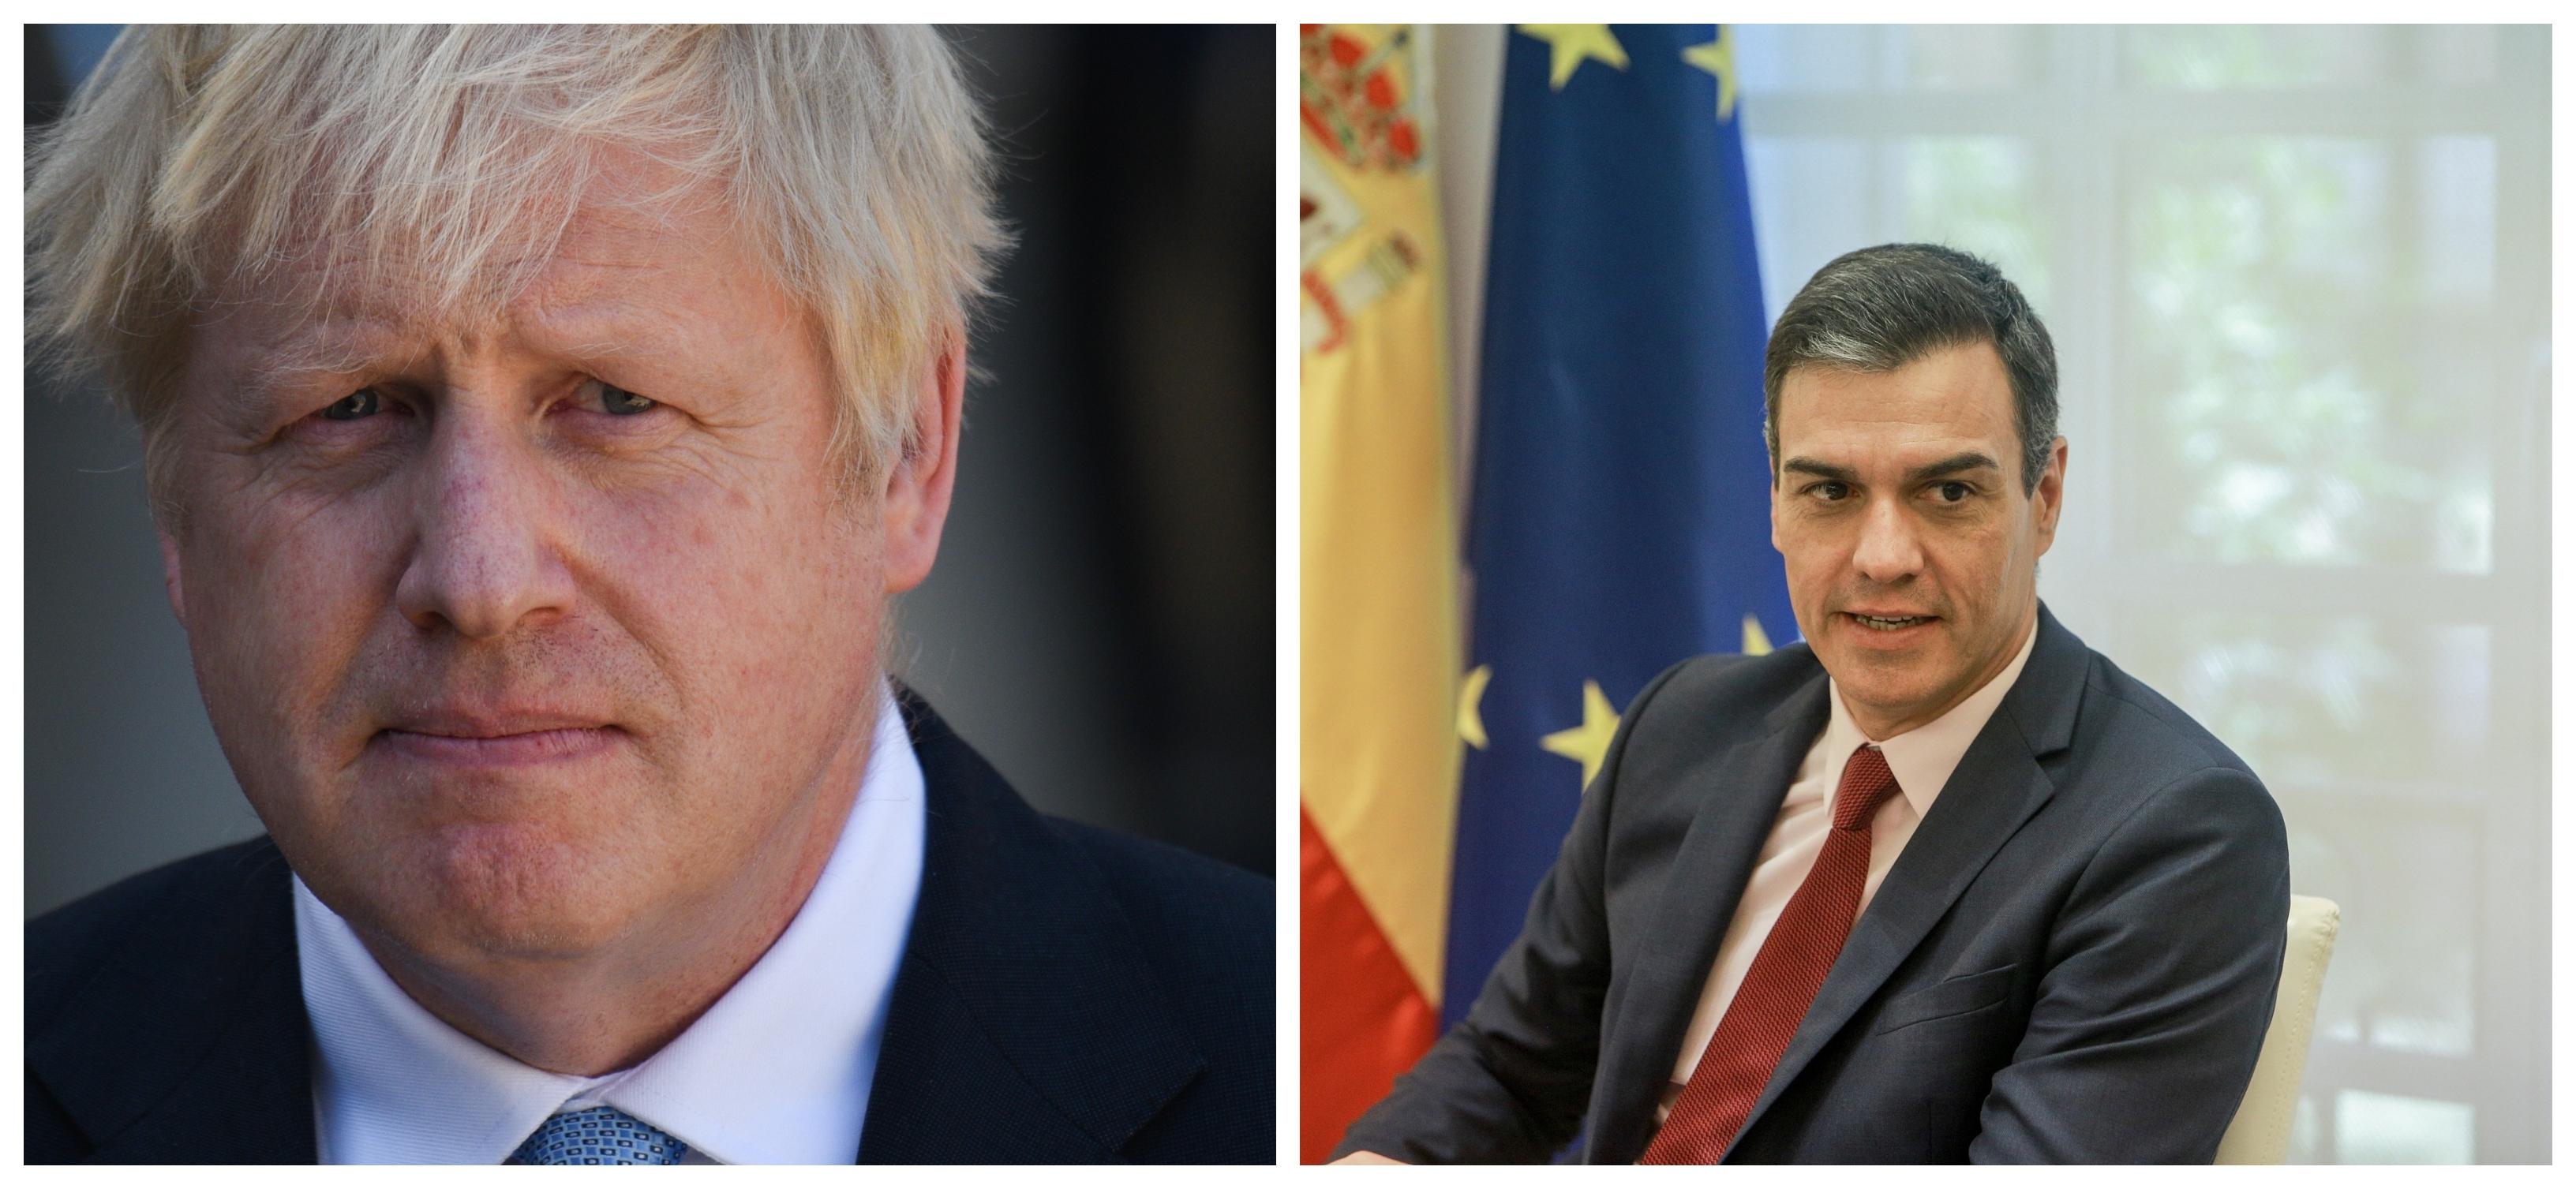 Boris Johnson y Pedro Sánchez. Fuente: Europa Press / Elaboración propia.